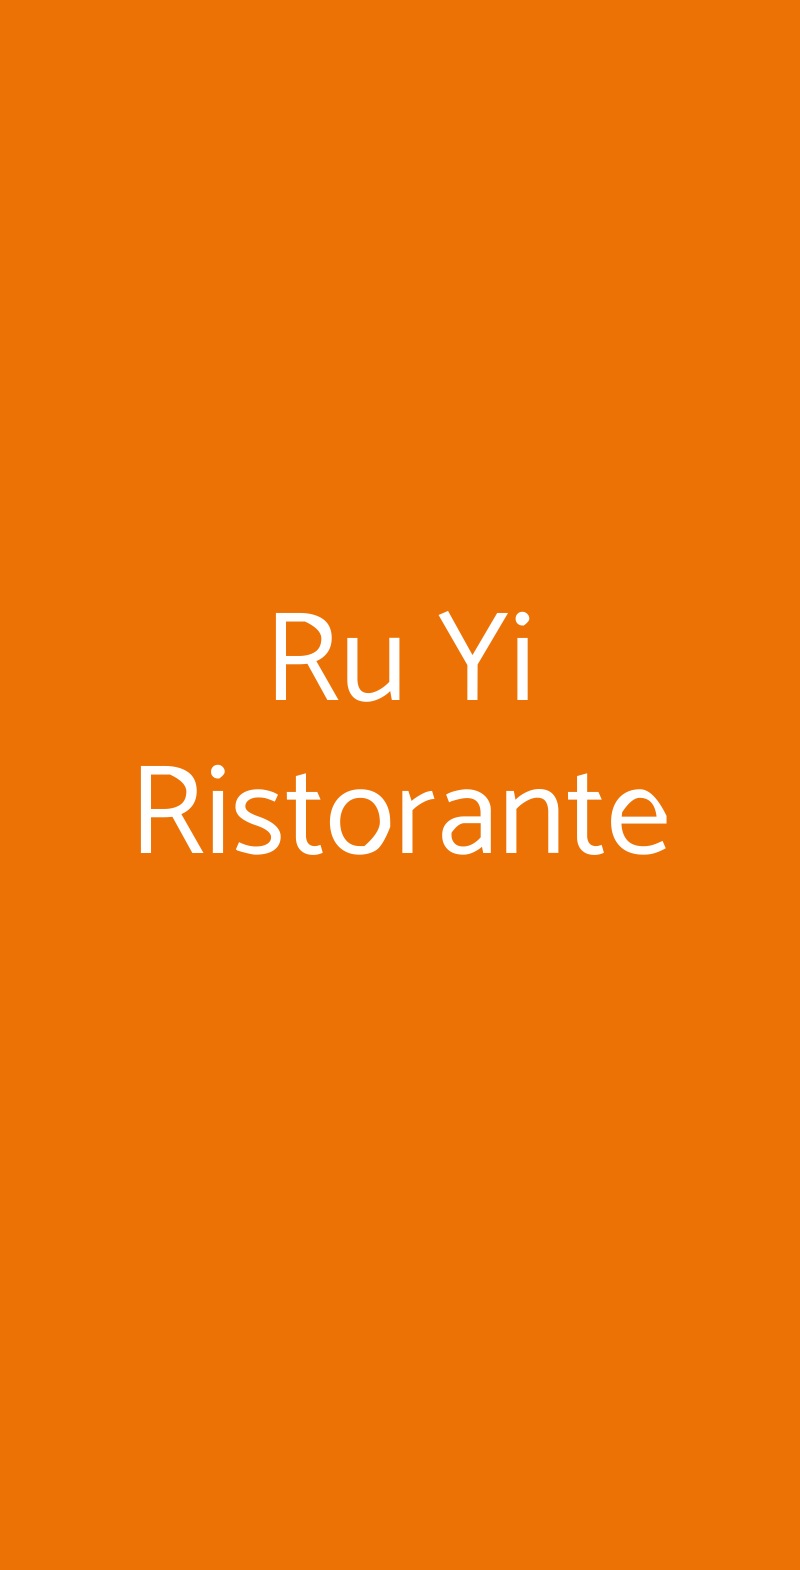 Ru Yi Ristorante Verona menù 1 pagina